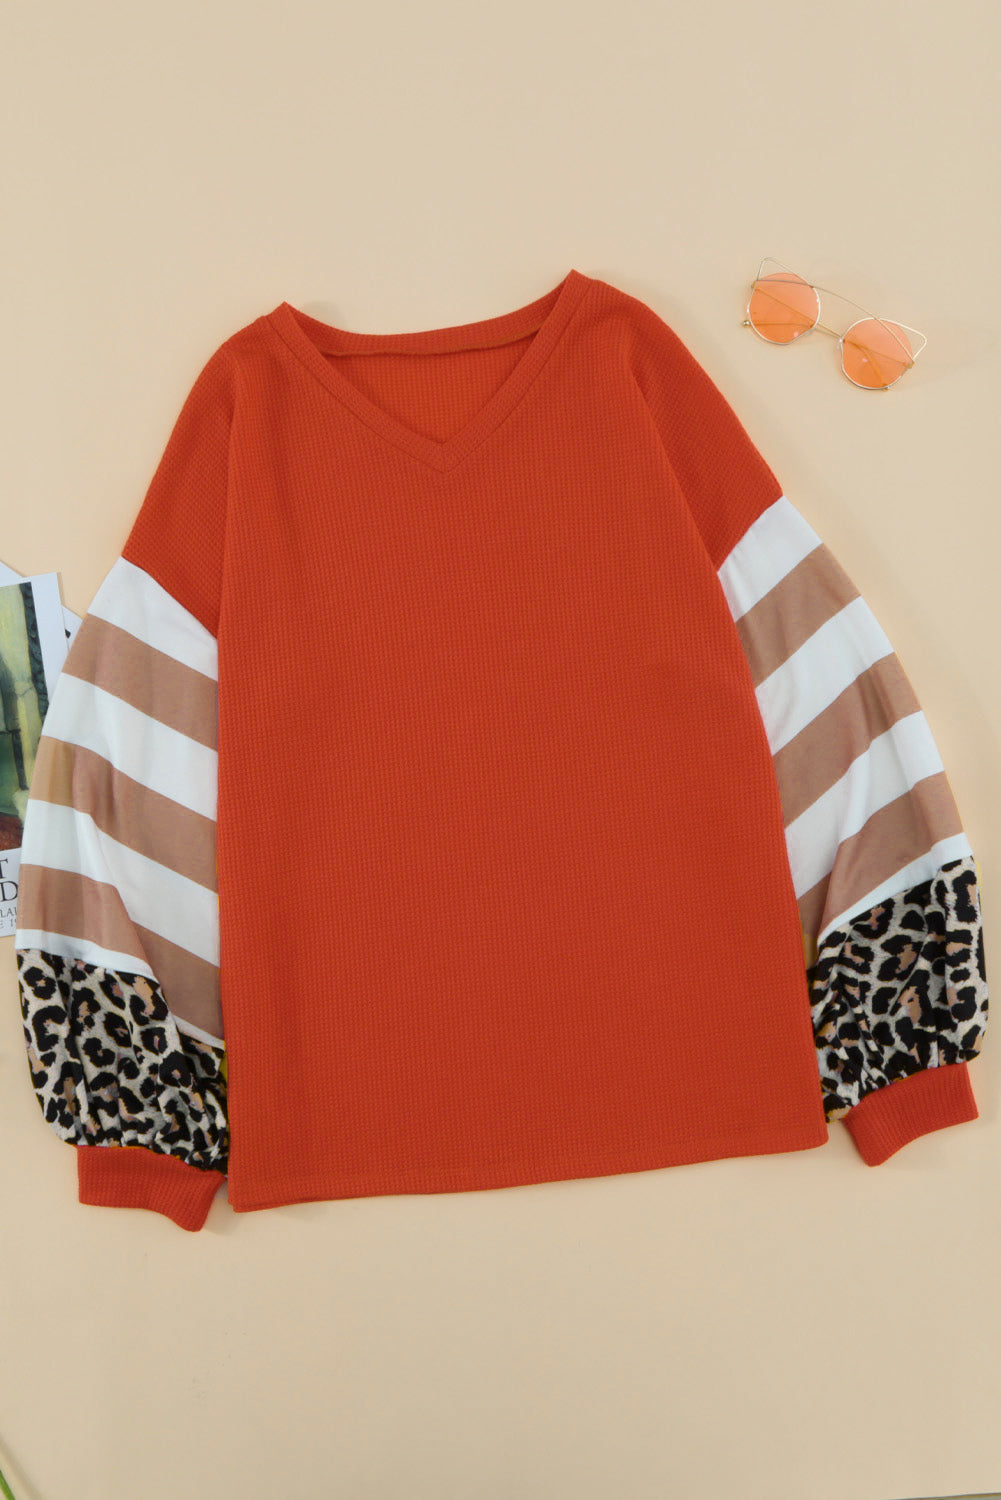 Orangefarbenes Oberteil mit V-Ausschnitt und Leopardenstreifen und Spleißlaternenärmeln